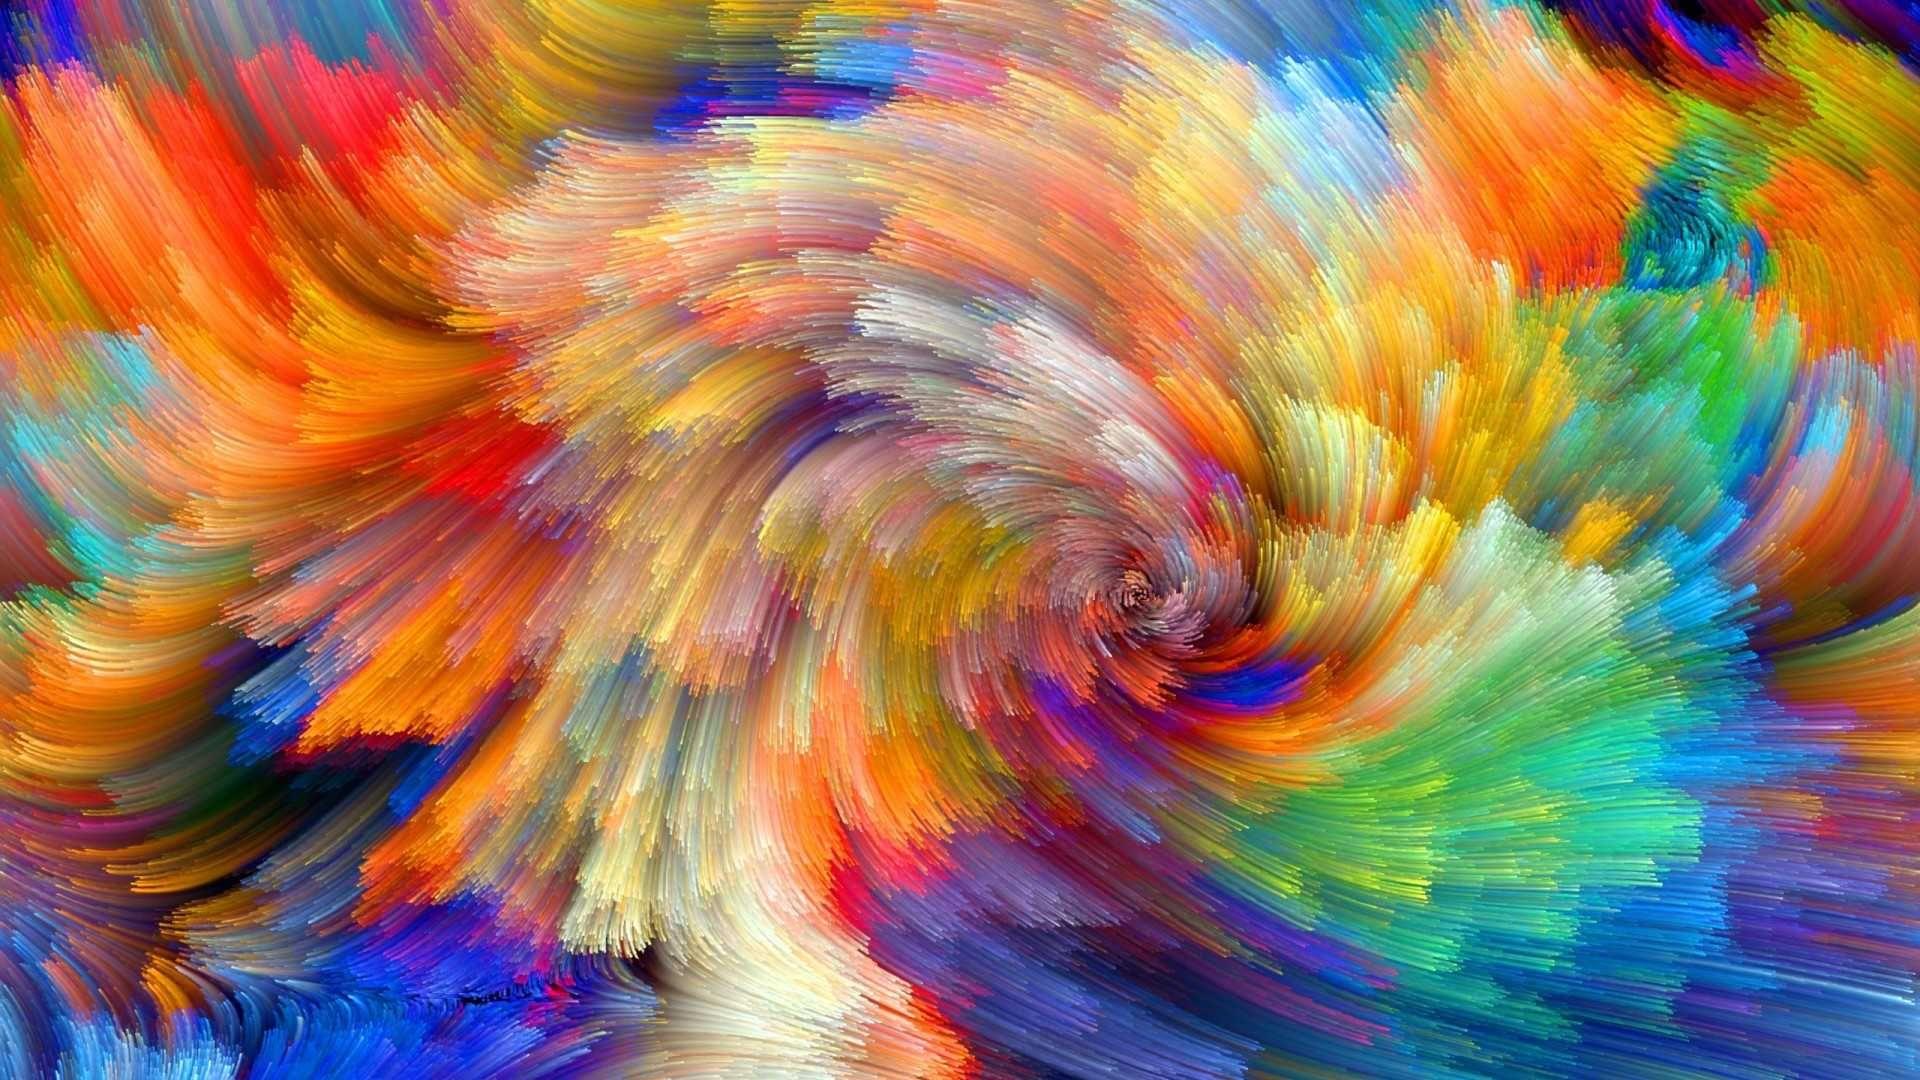 Hãy khám phá thế giới trừu tượng đầy sắc màu với hình nền 5D nghệ thuật! Với hiệu ứng chuyển động và độ sắc nét tuyệt đỉnh, bạn sẽ được sống trong một thế giới giả tưởng tuyệt đẹp!